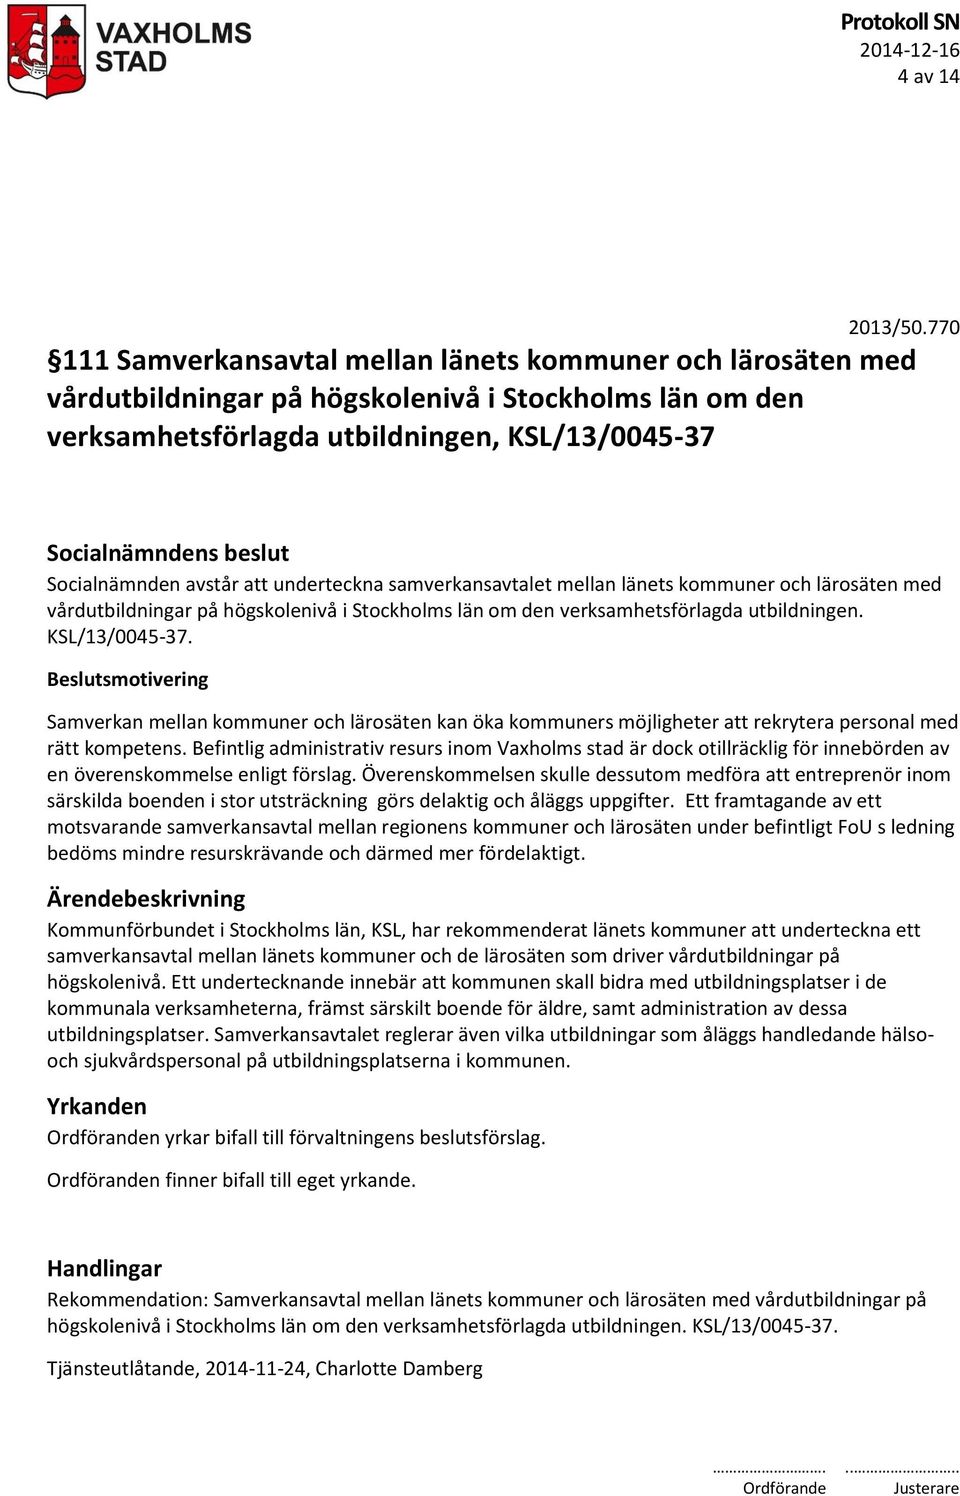 underteckna samverkansavtalet mellan länets kommuner och lärosäten med vårdutbildningar på högskolenivå i Stockholms län om den verksamhetsförlagda utbildningen. KSL/13/0045-37.